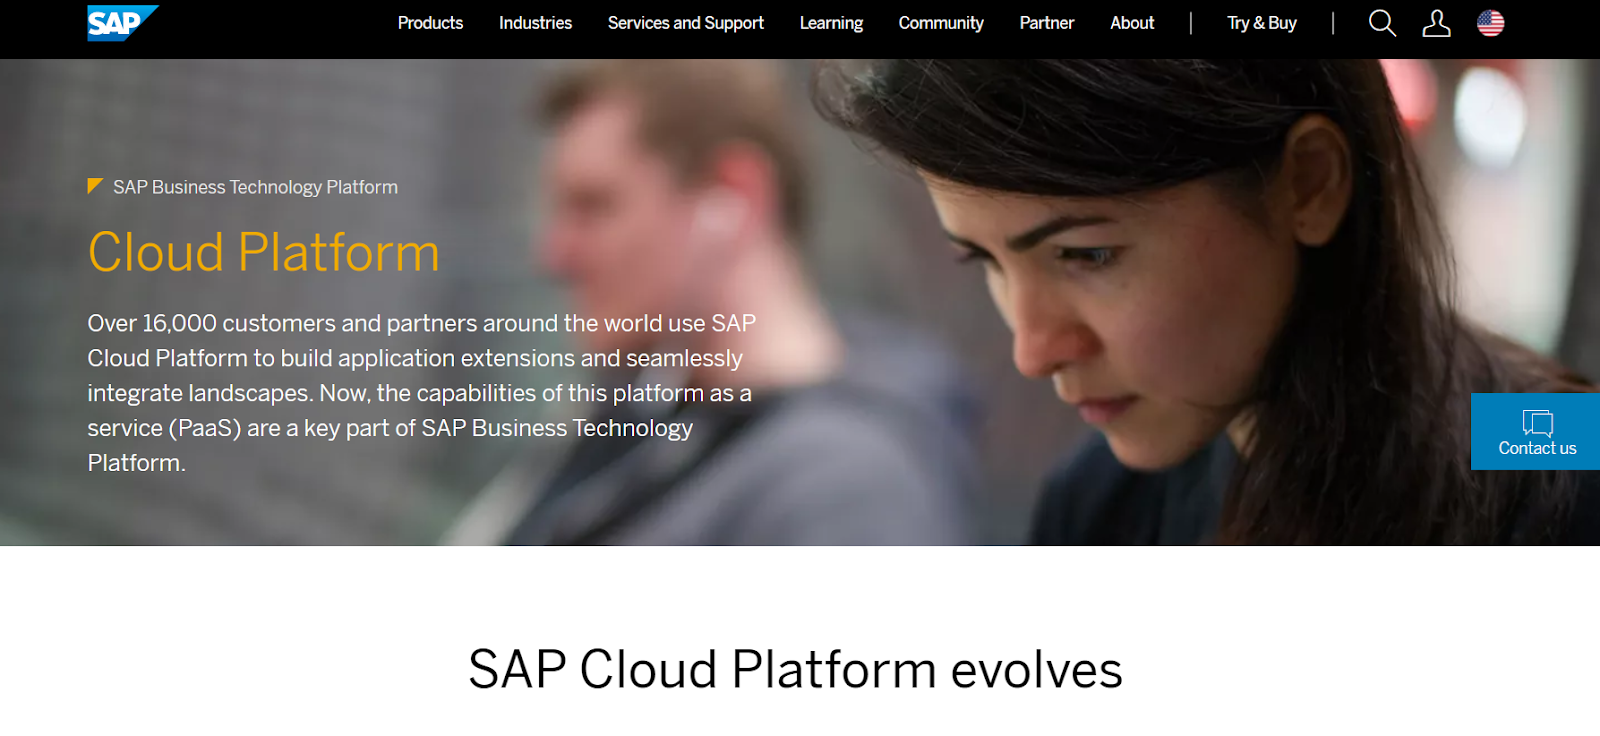 SAP’s Cloud Platform